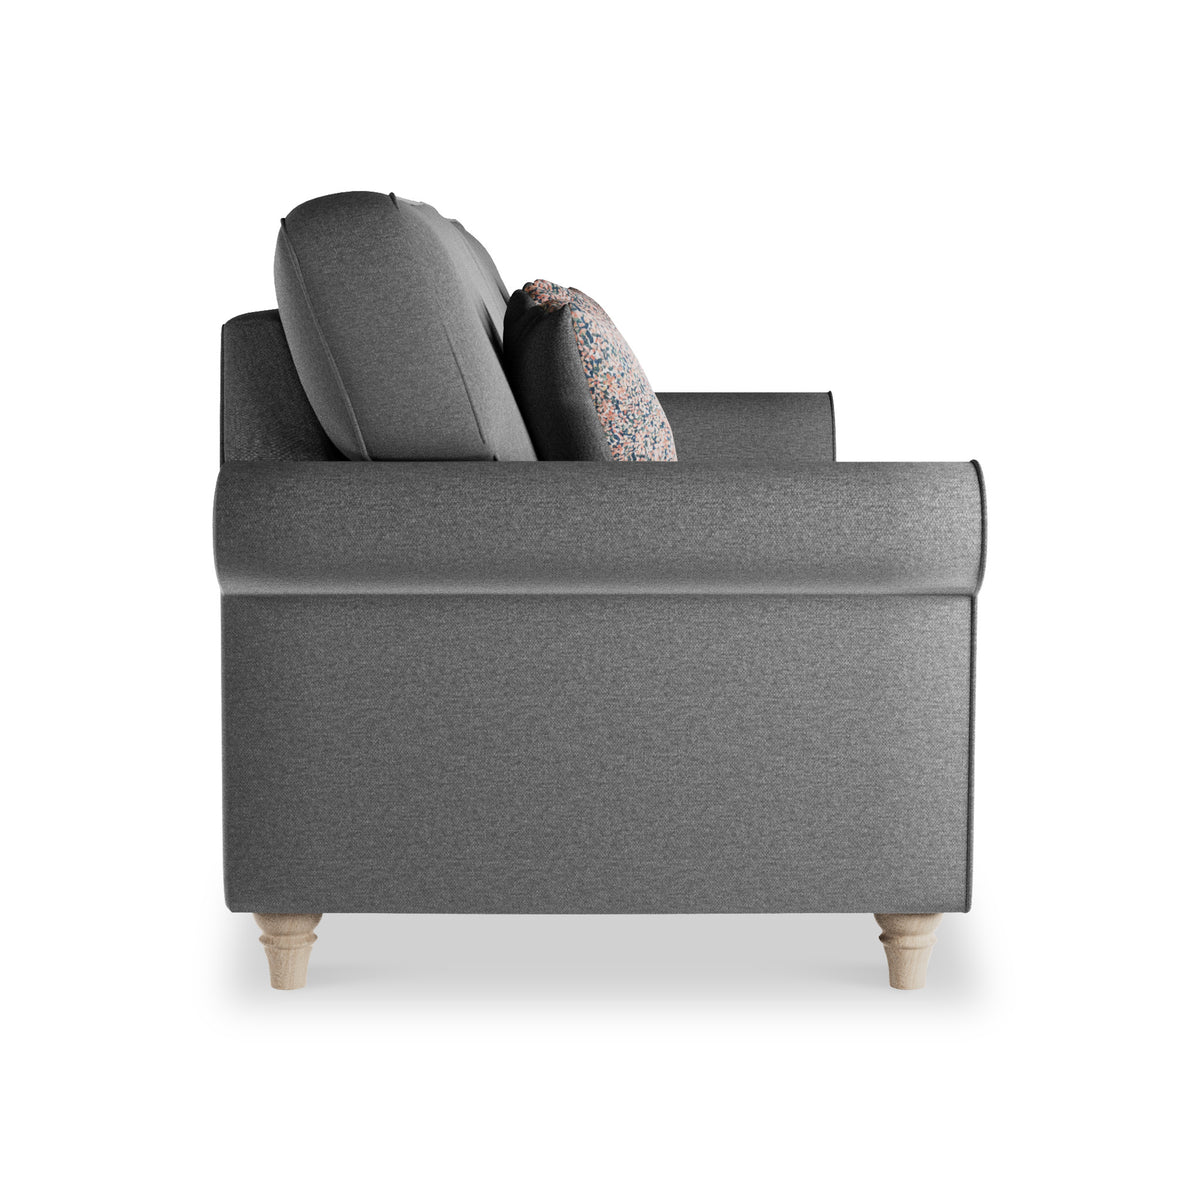 Thomas Grey 3 Seater Sofa